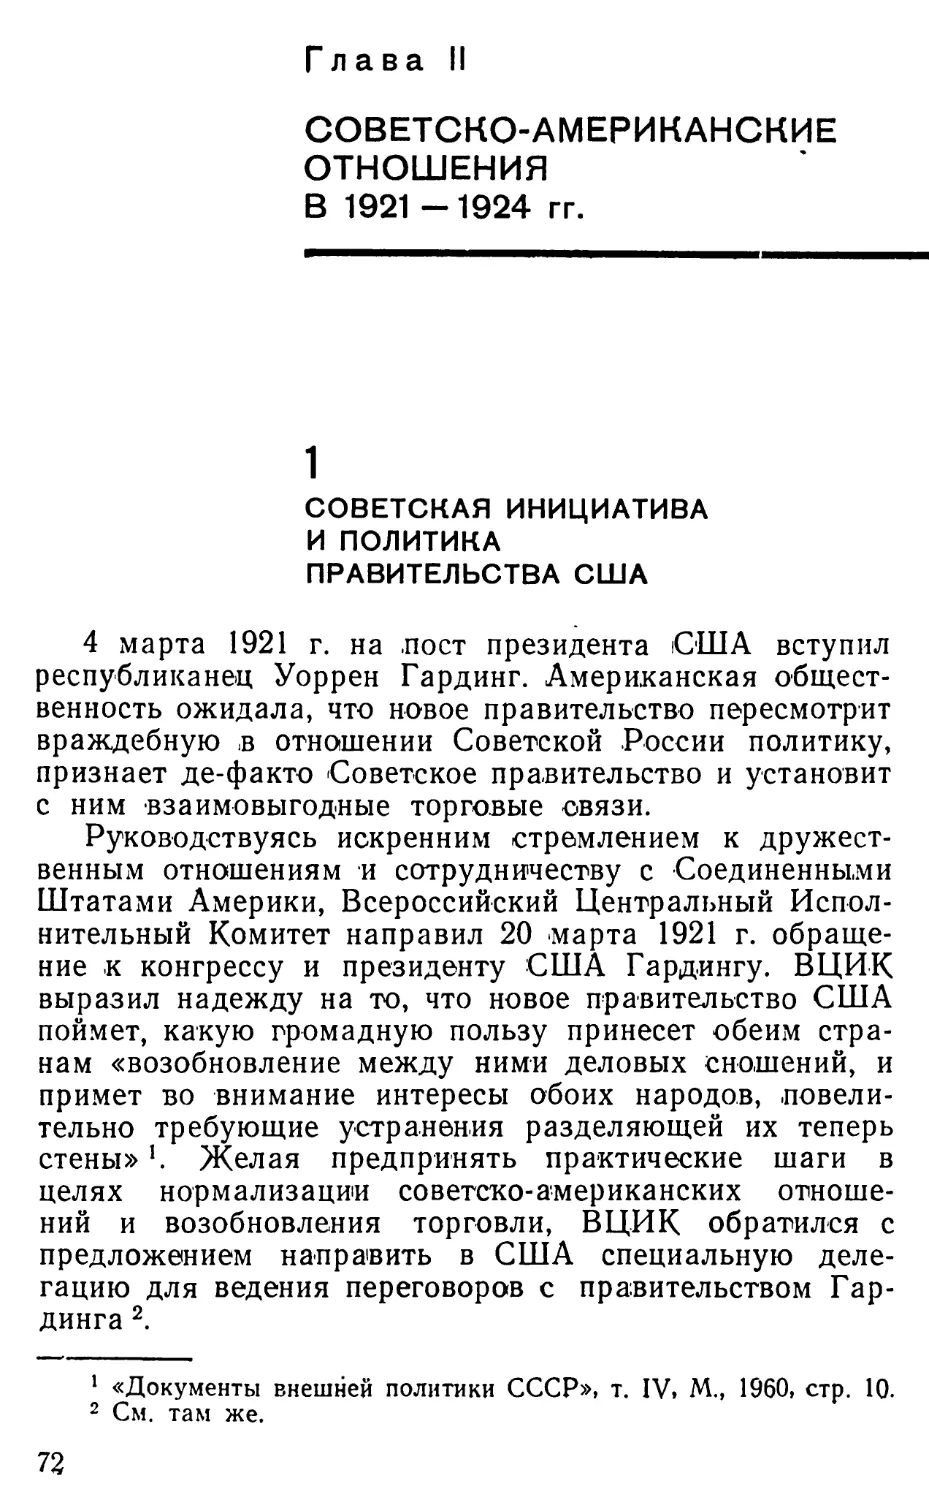 Глава II. Советско-американские отношения в 1921 —1924 гг